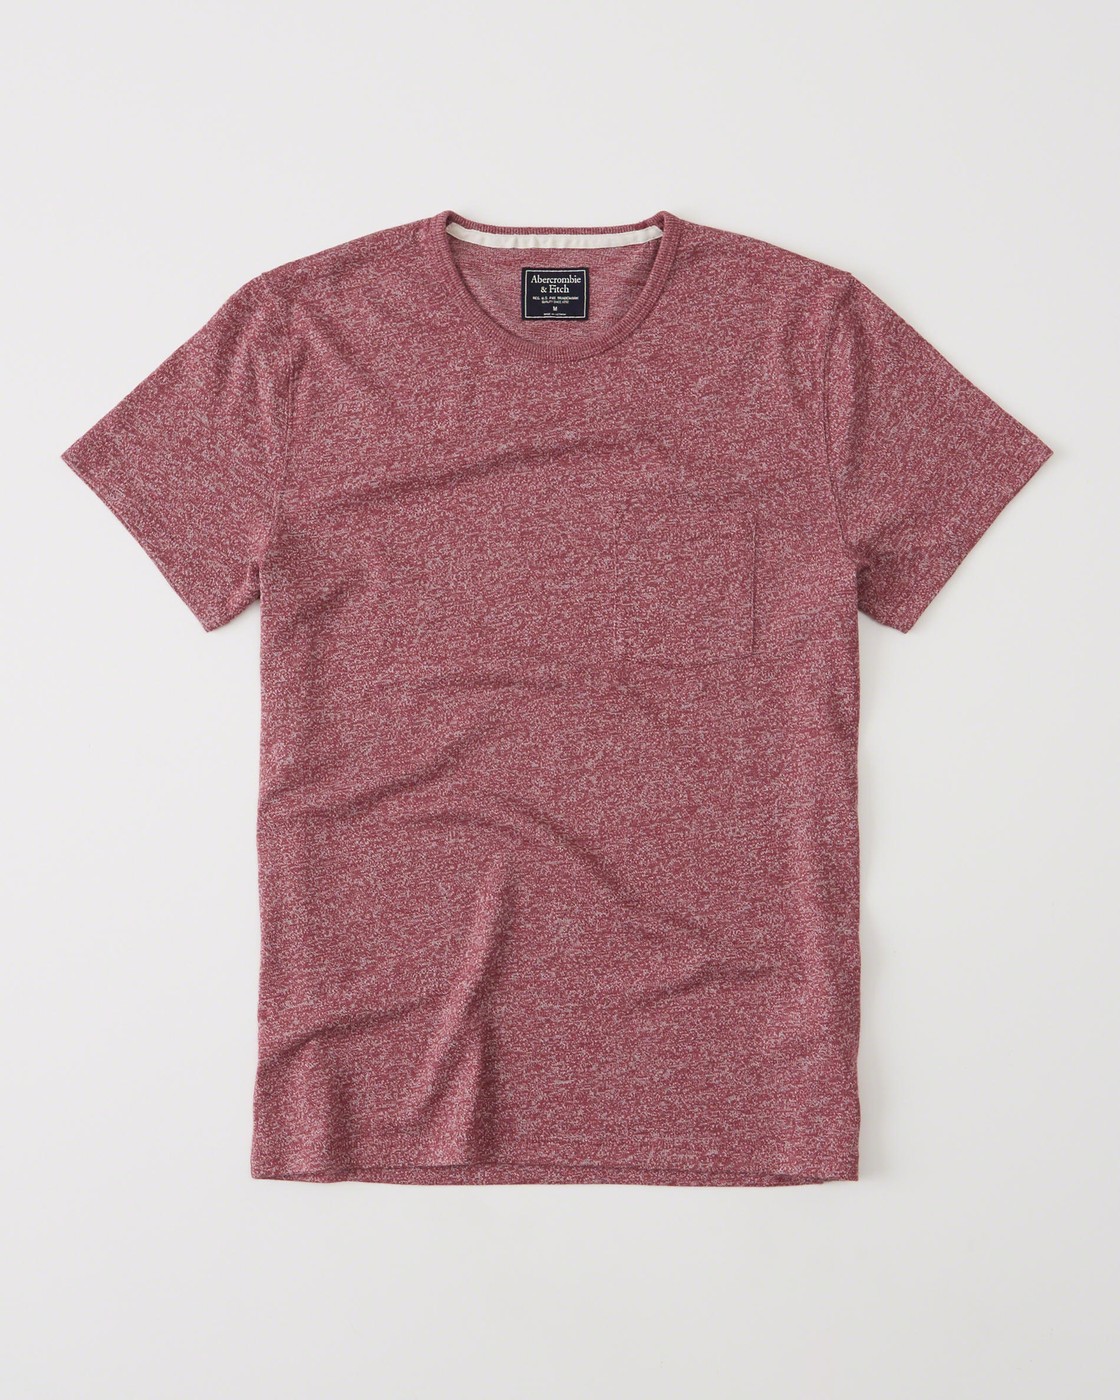 Красная футболка - мужская футболка Abercrombie & Fitch, L, L